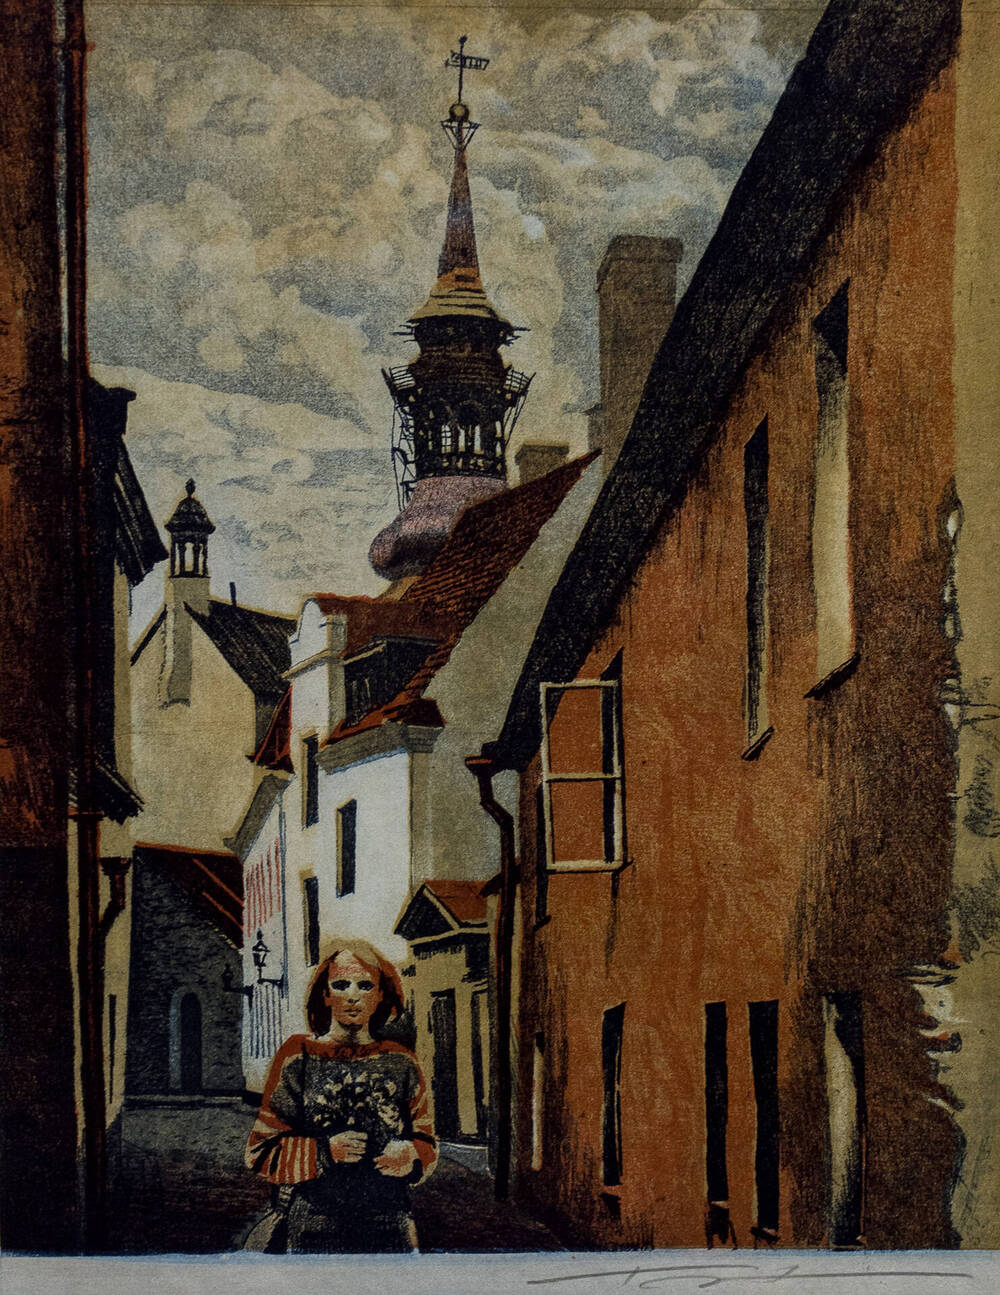 Картина Старый Таллин